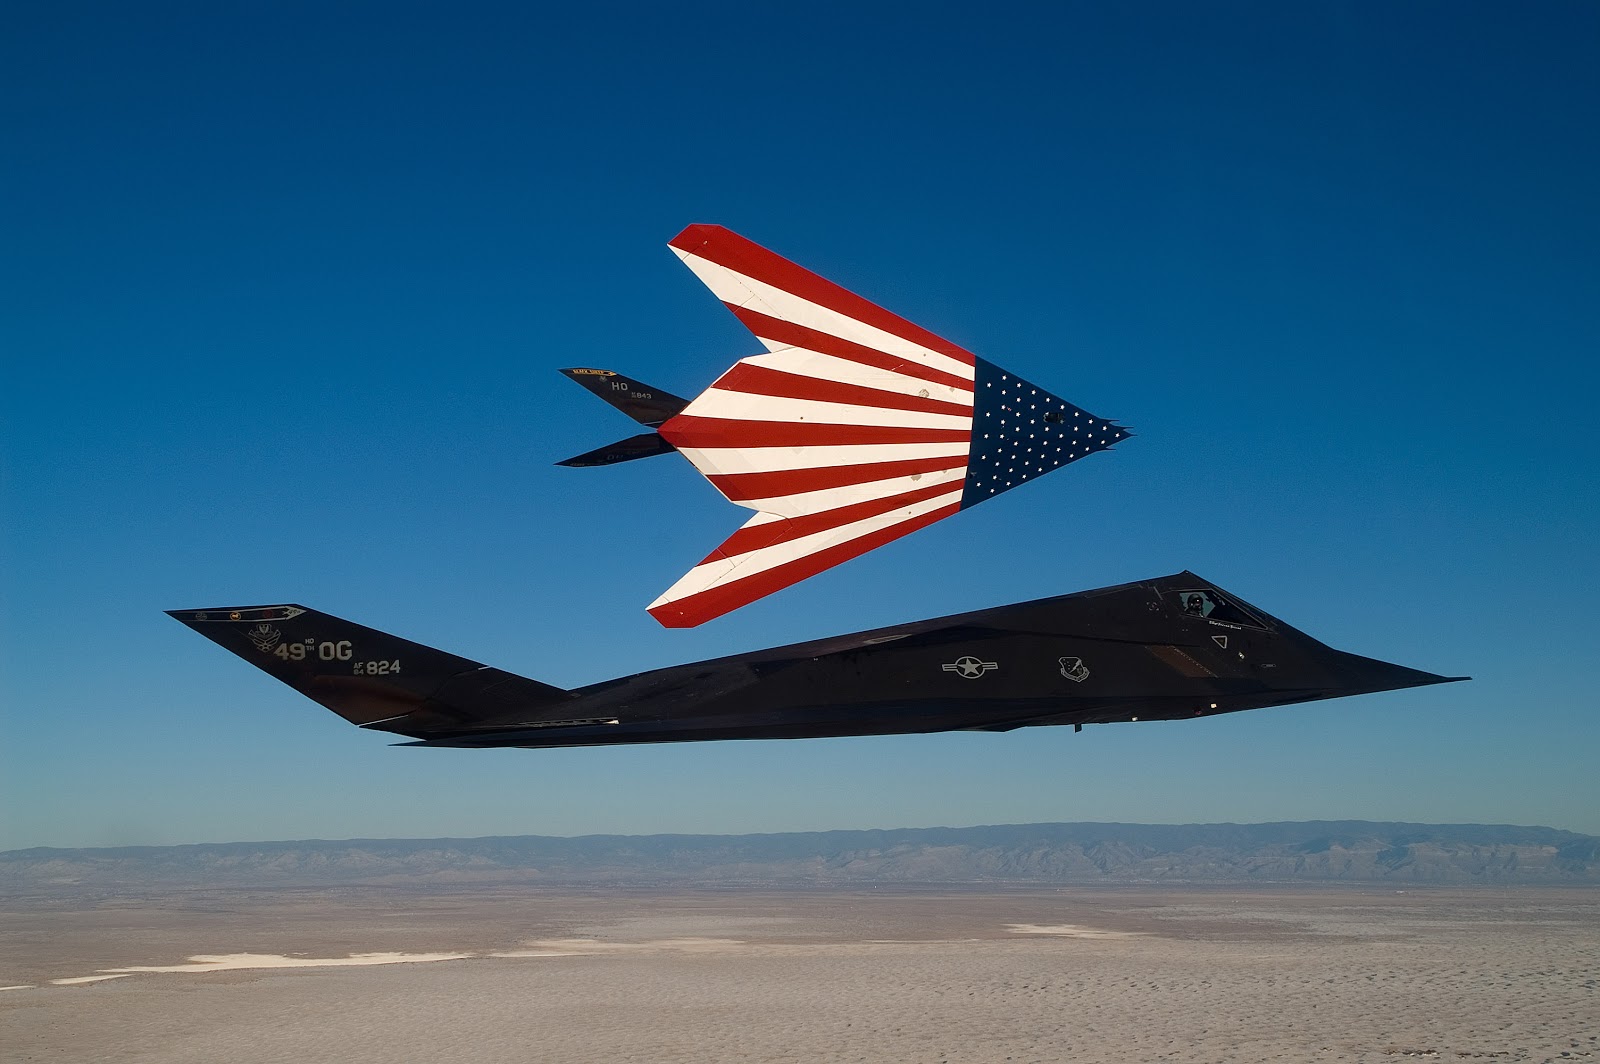 nosotros fondos de la fuerza aérea,avión,aeronave,lockheed f 117 nighthawk,vehículo,bandera